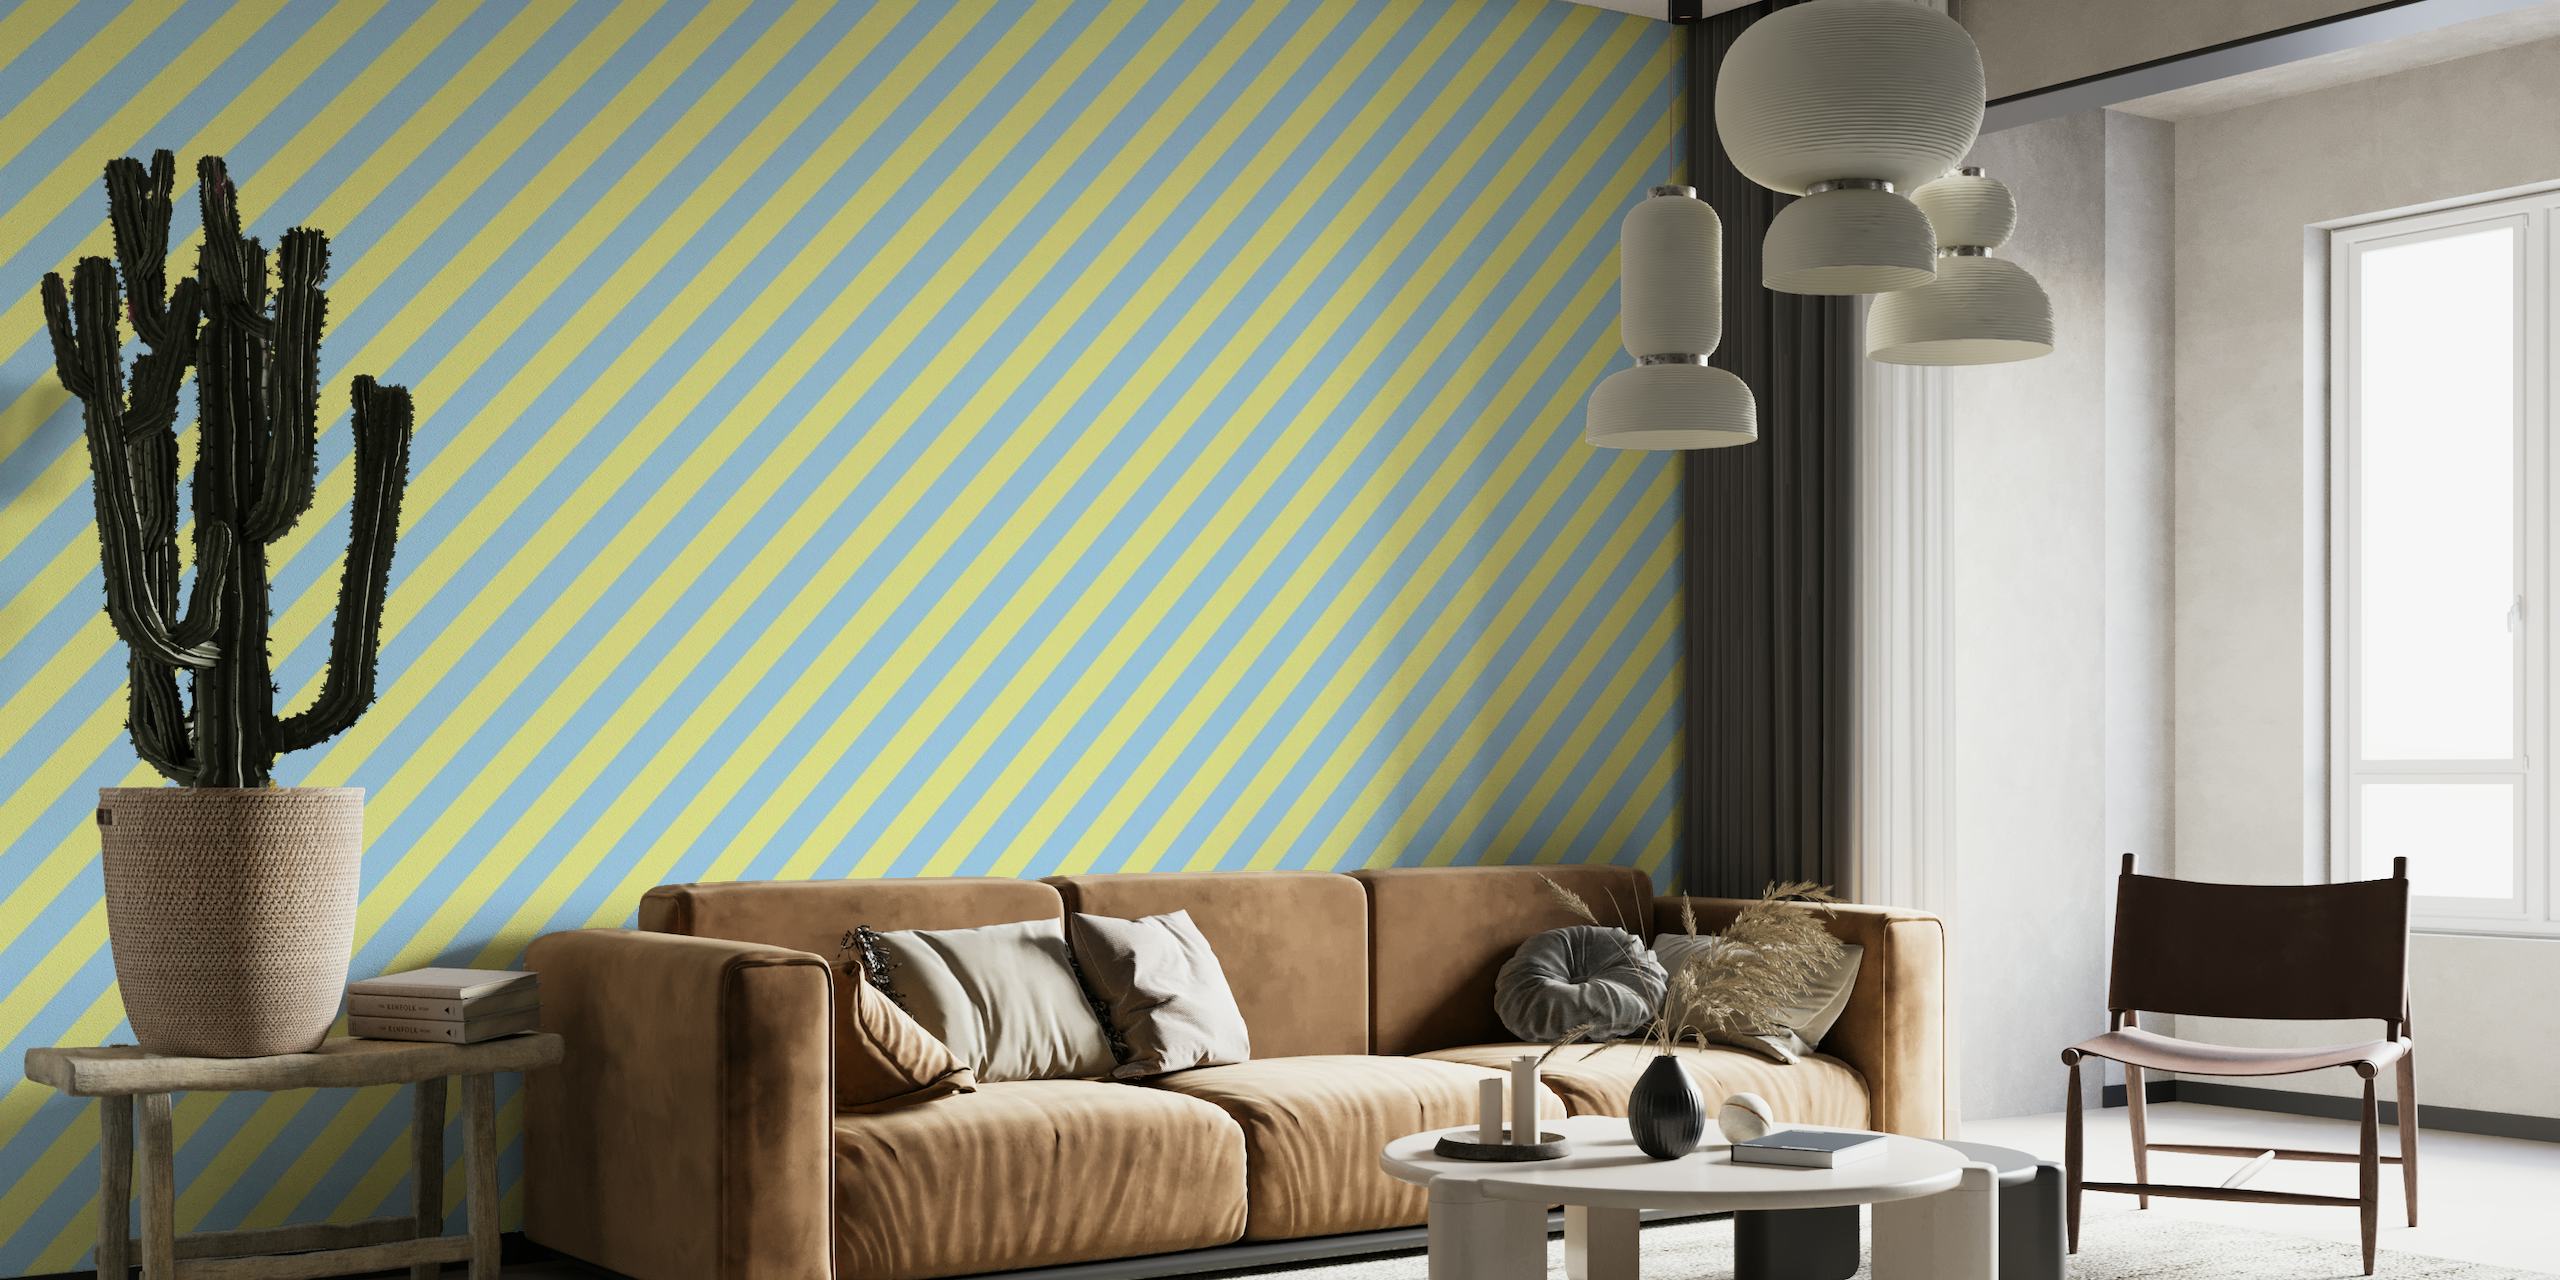 Blå och gul diagonal randig tapet skapar en djärv och levande bakgrund